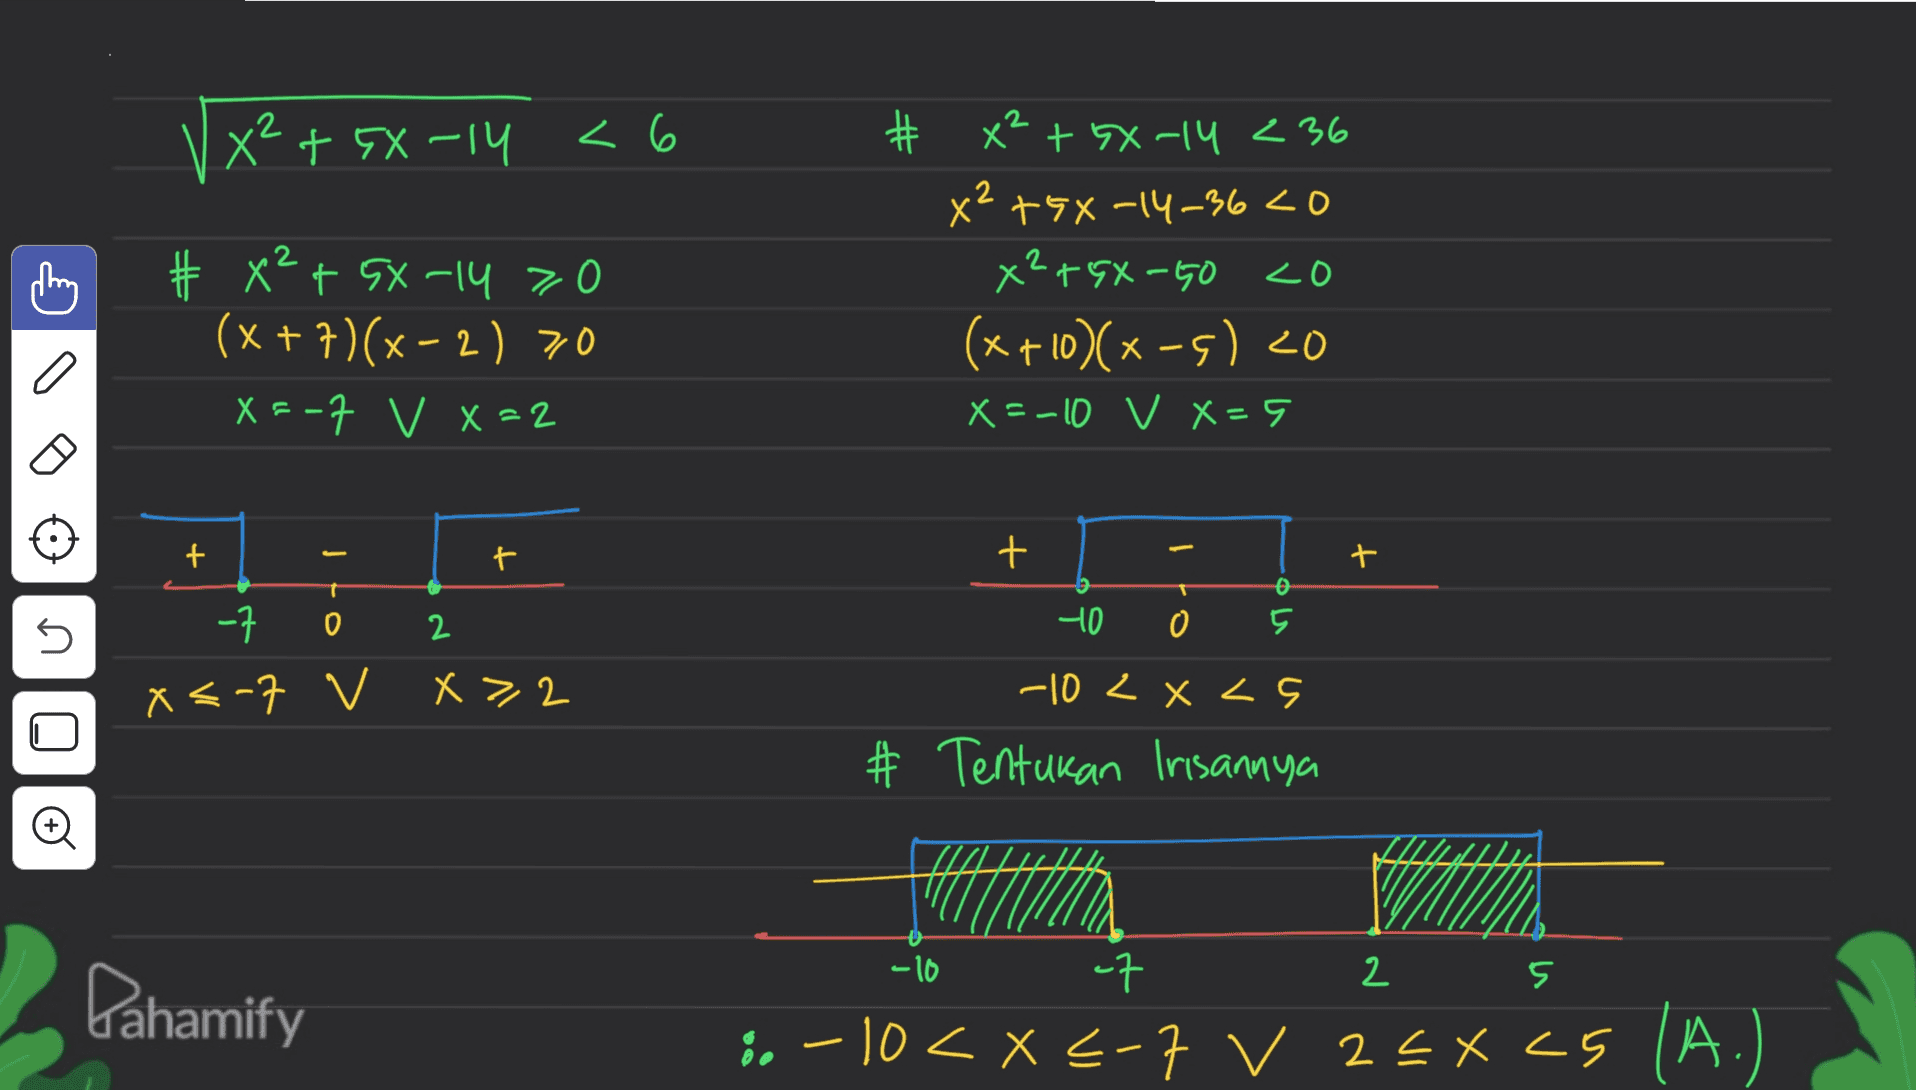 X²+GX-14 < 6 # # x² + 5x-14 > 0 (x+7)(x-2) 70 X=-7 V X =2 # x² + GX-14 236 x² + 5x-14-36 <0 x²+gX-GO <o (x+10)(x-5) zo X=-10 v X=5 Į 1 十 + t 十 o 5 40 o 5 -7 0 2 X<-7 V X>,2 -10 2XLs * Tentukan Irisannya -10 of 구 2 5 Dahamify :. -10 < X <-7 V 25X CS (A.) 